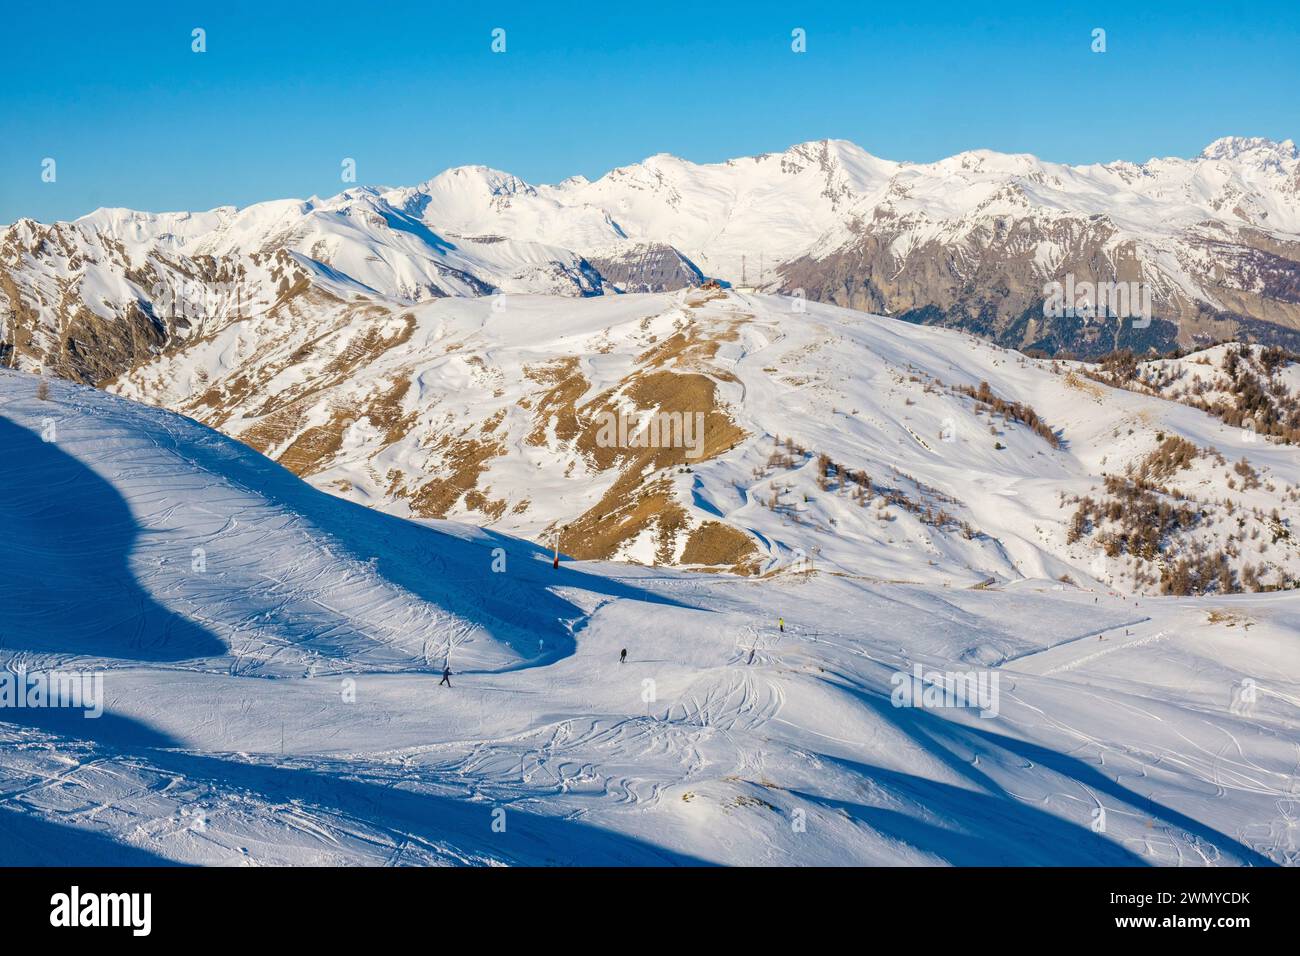 France, Hautes Alpes, Risoul 1850, the ski resort Stock Photo